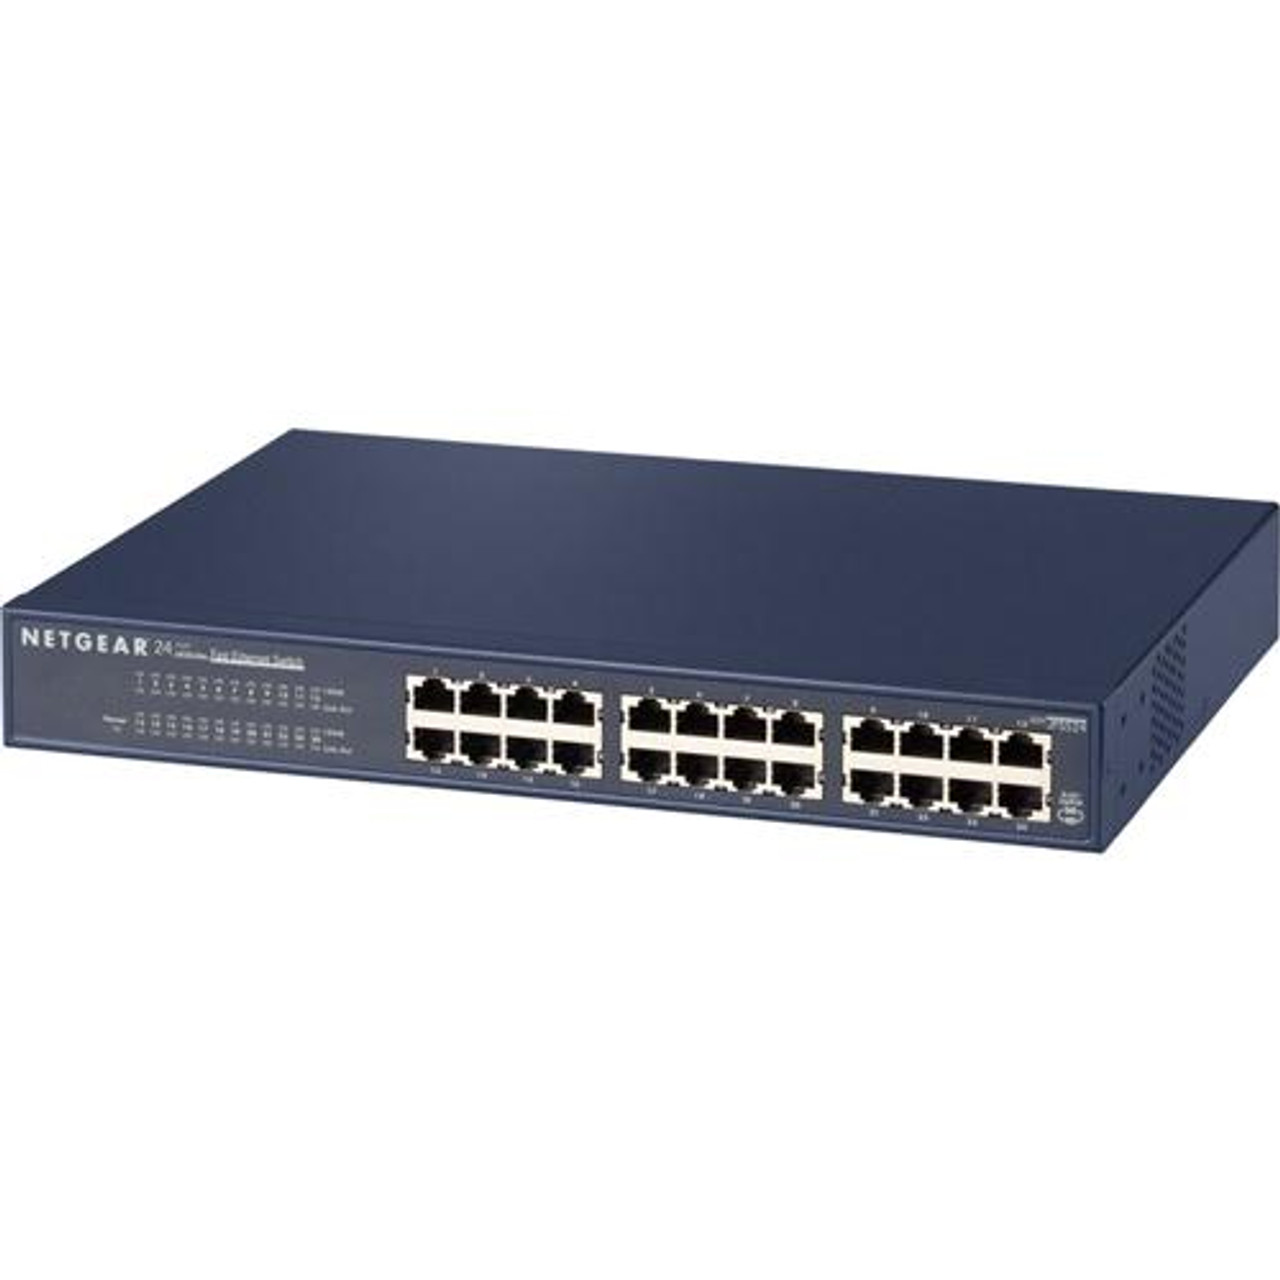 JFS524NAR NetGear ProSafe Plus 24-Ports 10/100Mbps RJ45 Fast Ethernet Rackmount Switch (Refurbished)